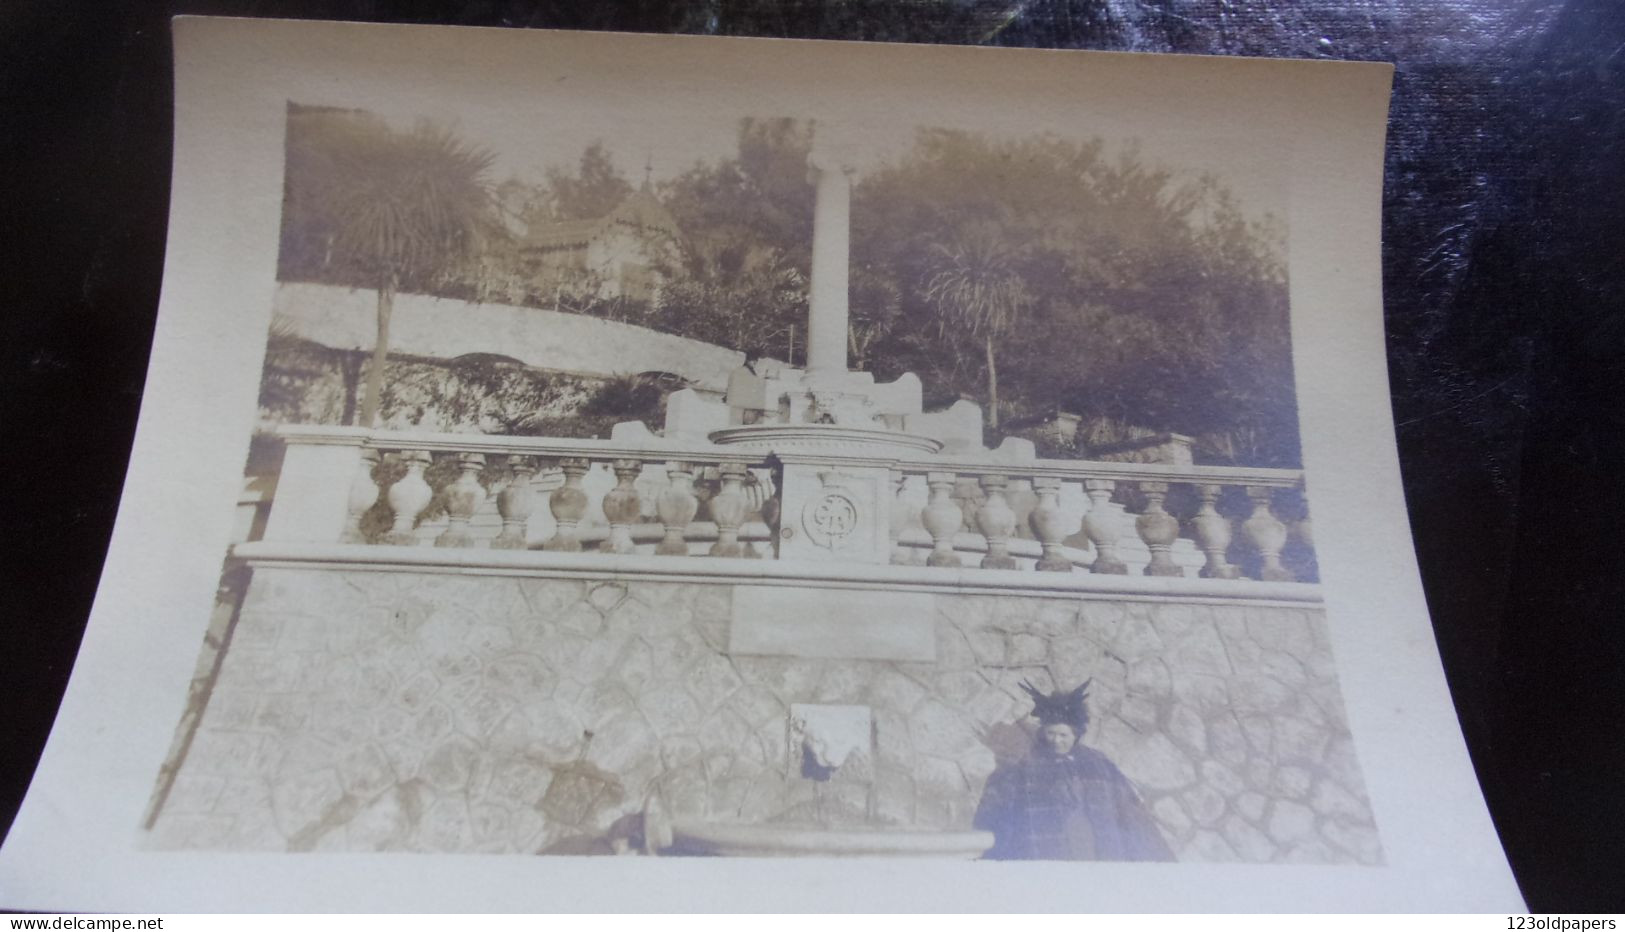 06 BELLE PHOTO DE CANNES LEGENDE  JANVIER 1899 FONTAINE DU MONUMENT DU DUC D ALBANY / LEOPOLD - Cannes